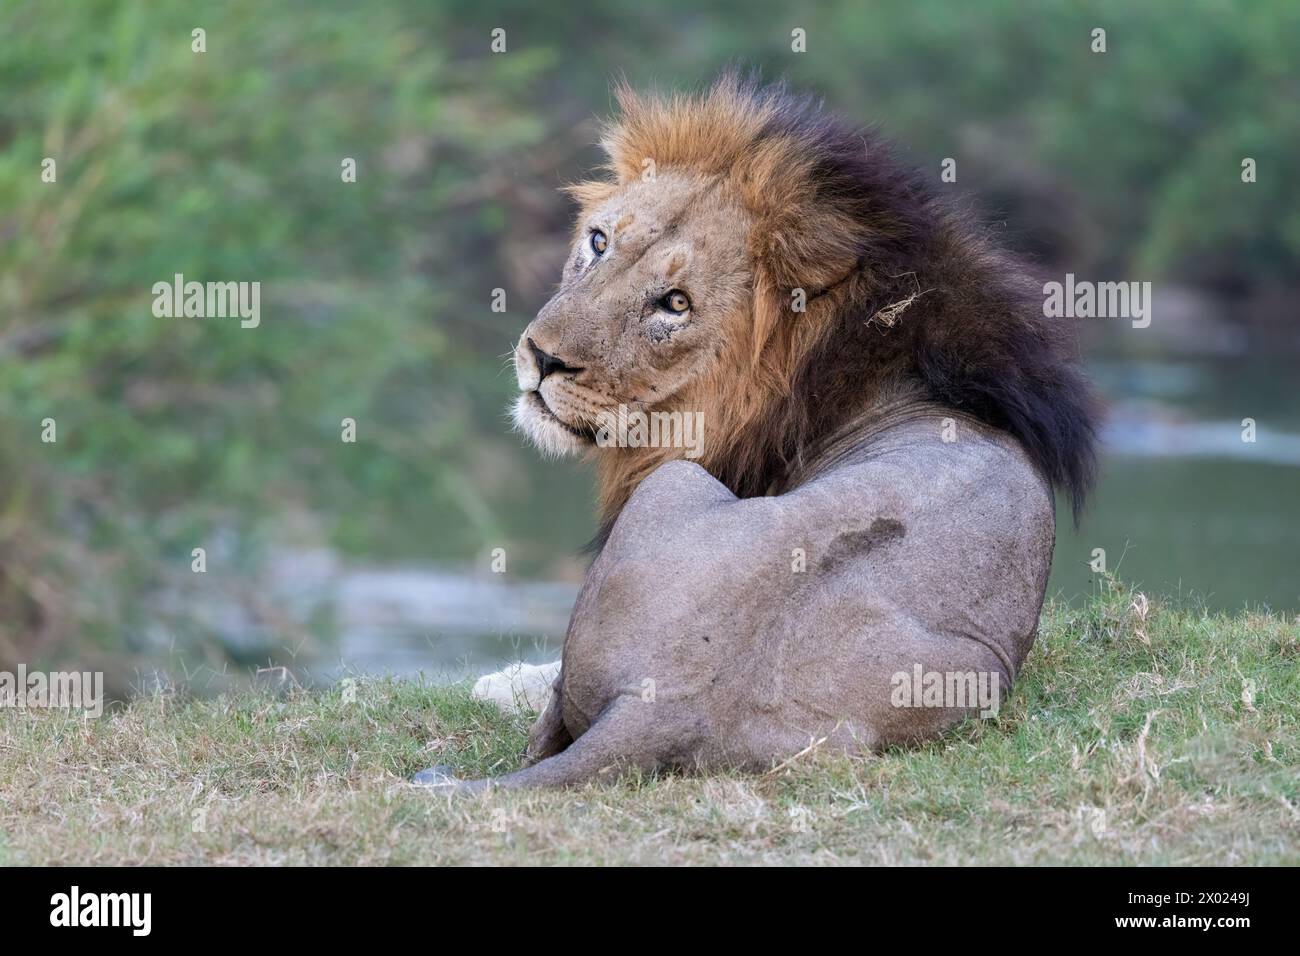 Lion (Panthera leo), Zimanga private game reserve, KwaZulu-Natal, South Africa Stock Photo